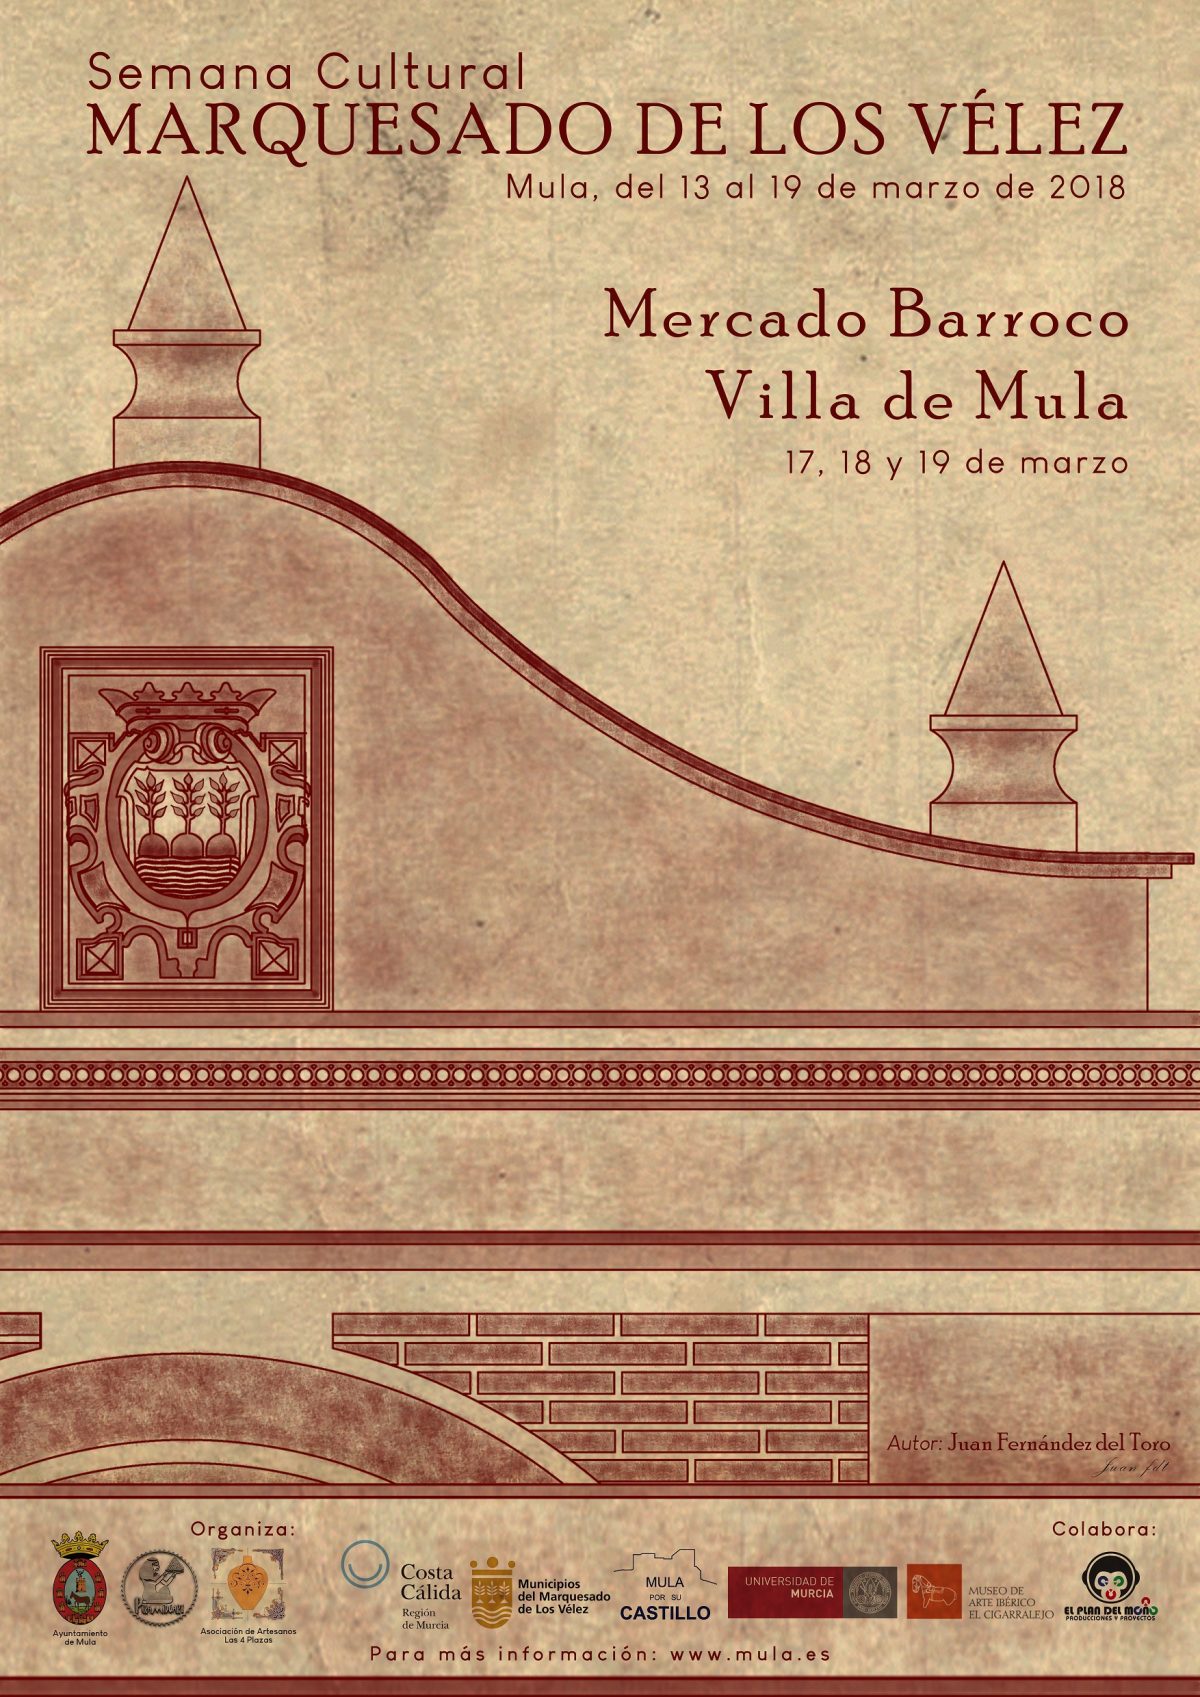 Cartel y programación semana cultural Marquesado de Los Vélez y Mercado Barroco 2018 en Mula